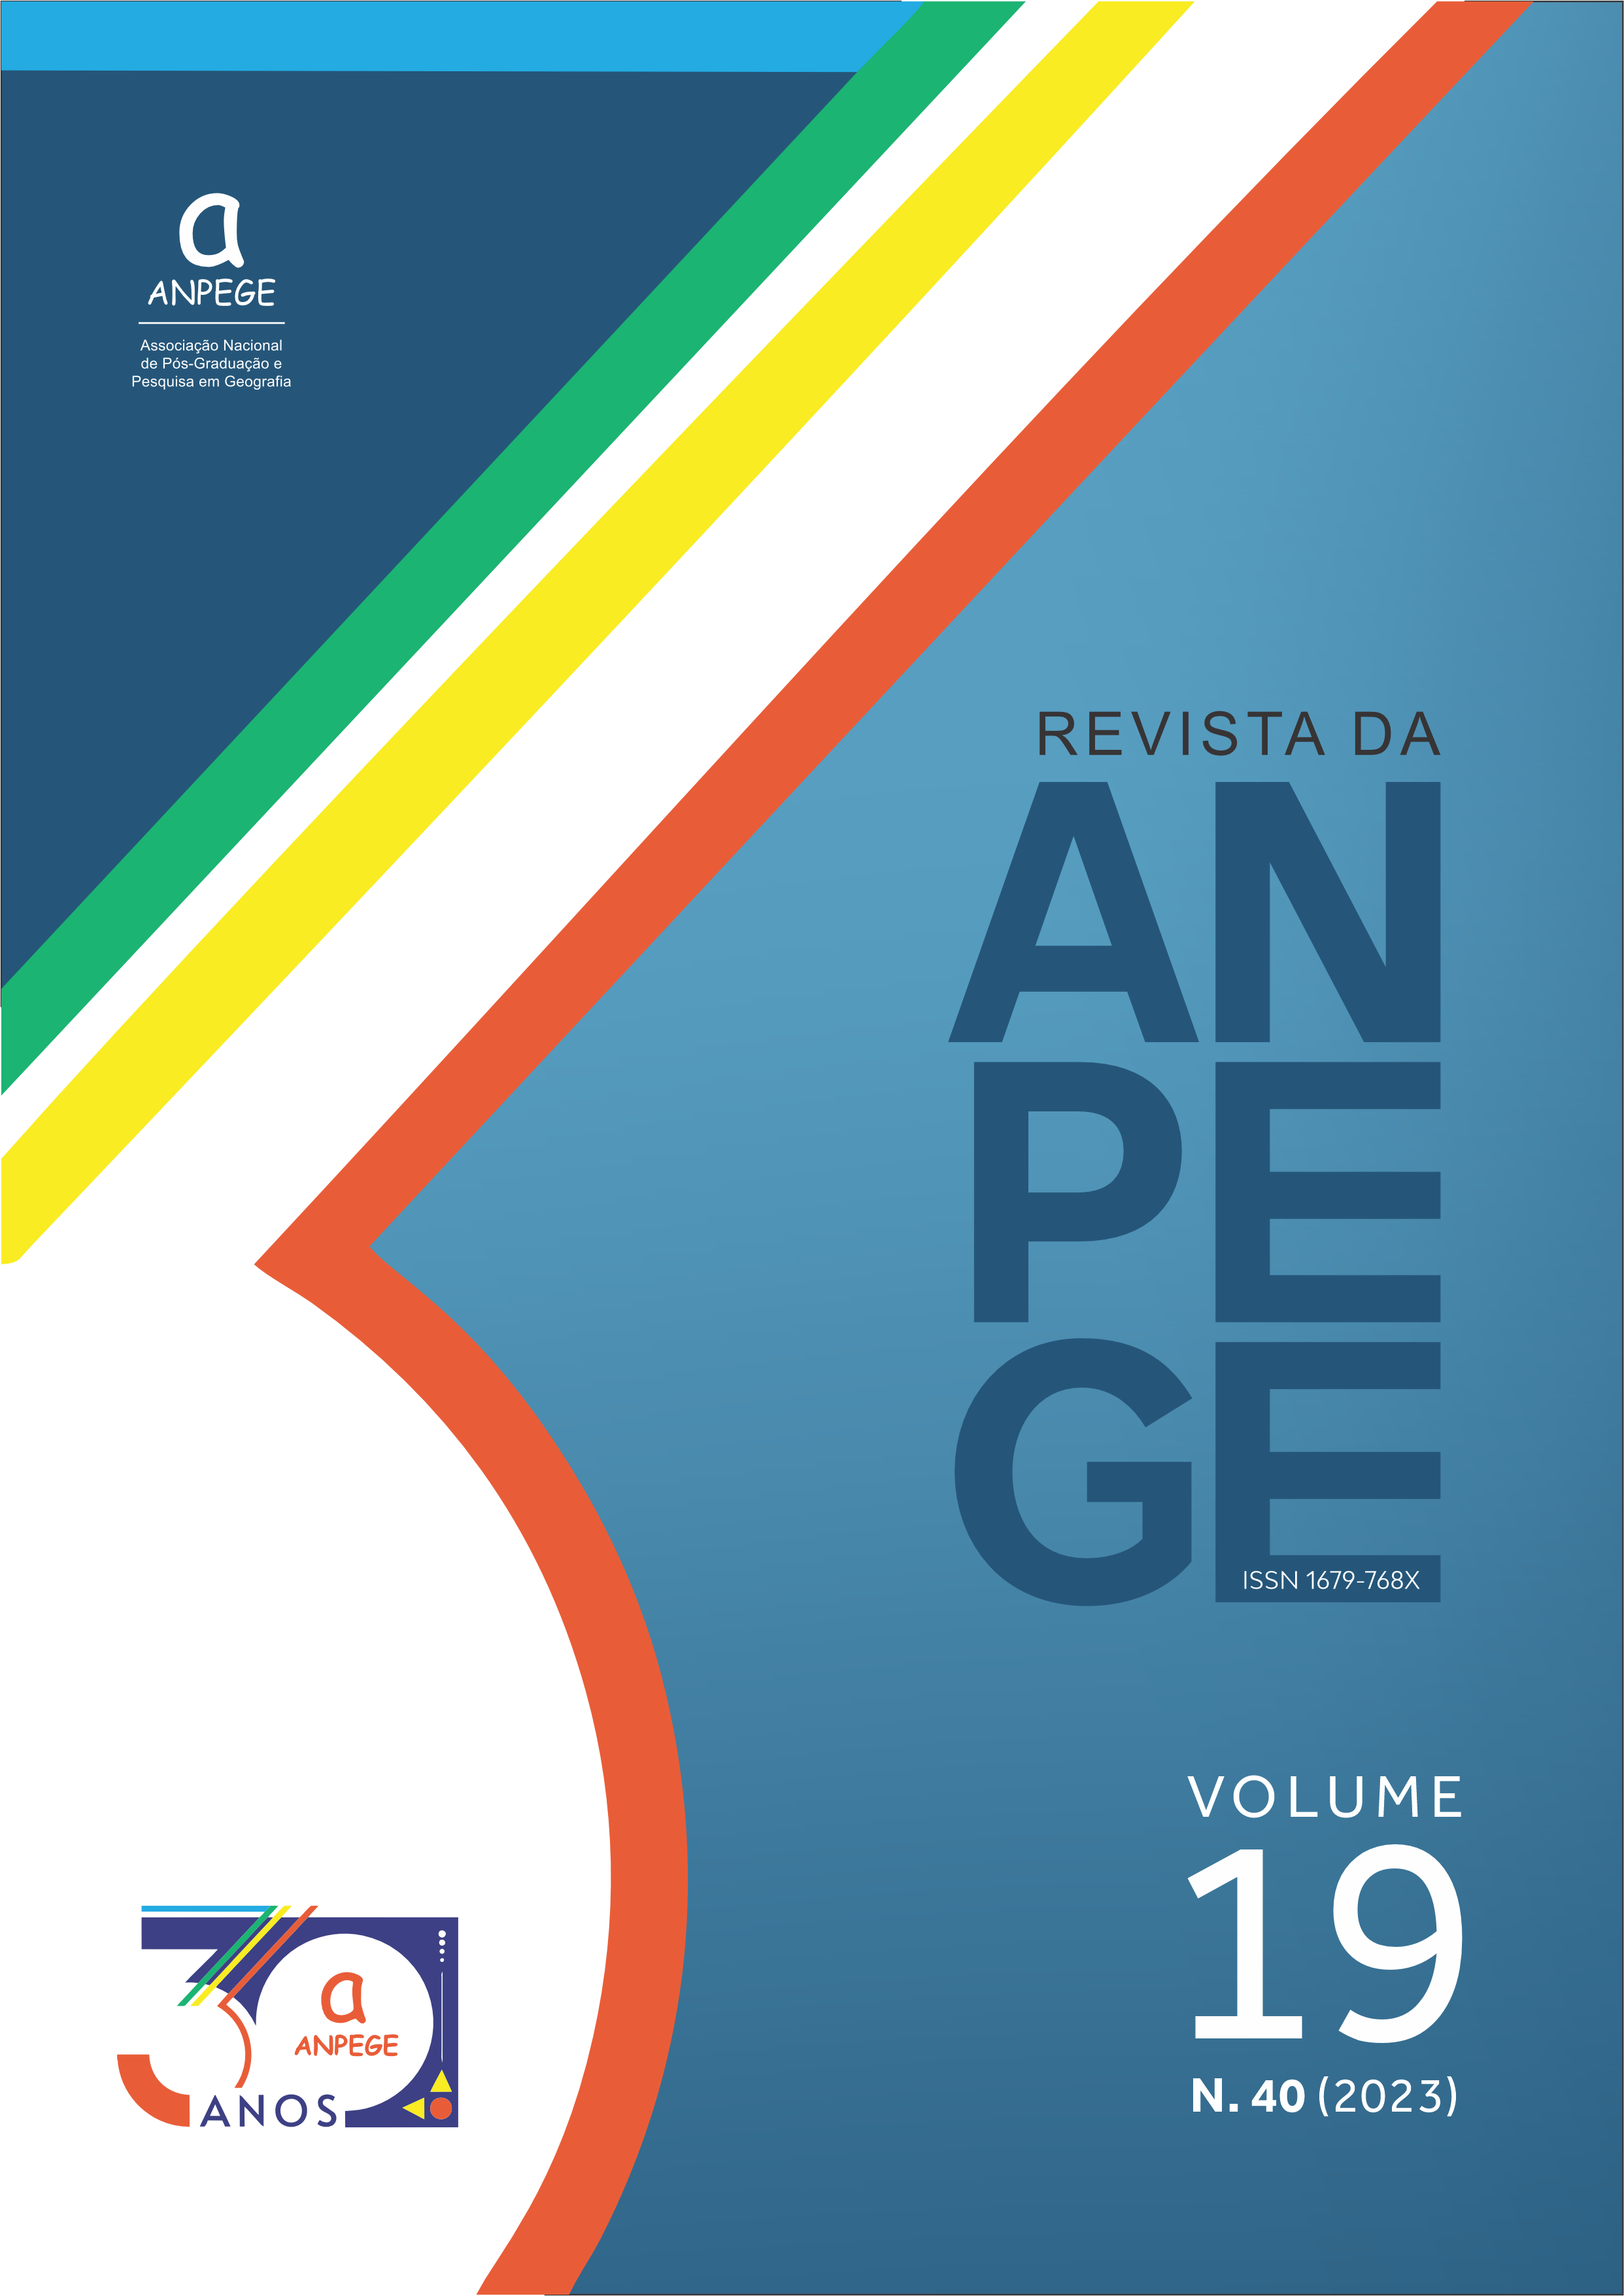 					Afficher Vol. 19 No. 40 (2023): Revista da ANPEGE, Volume 19 Número 40
				